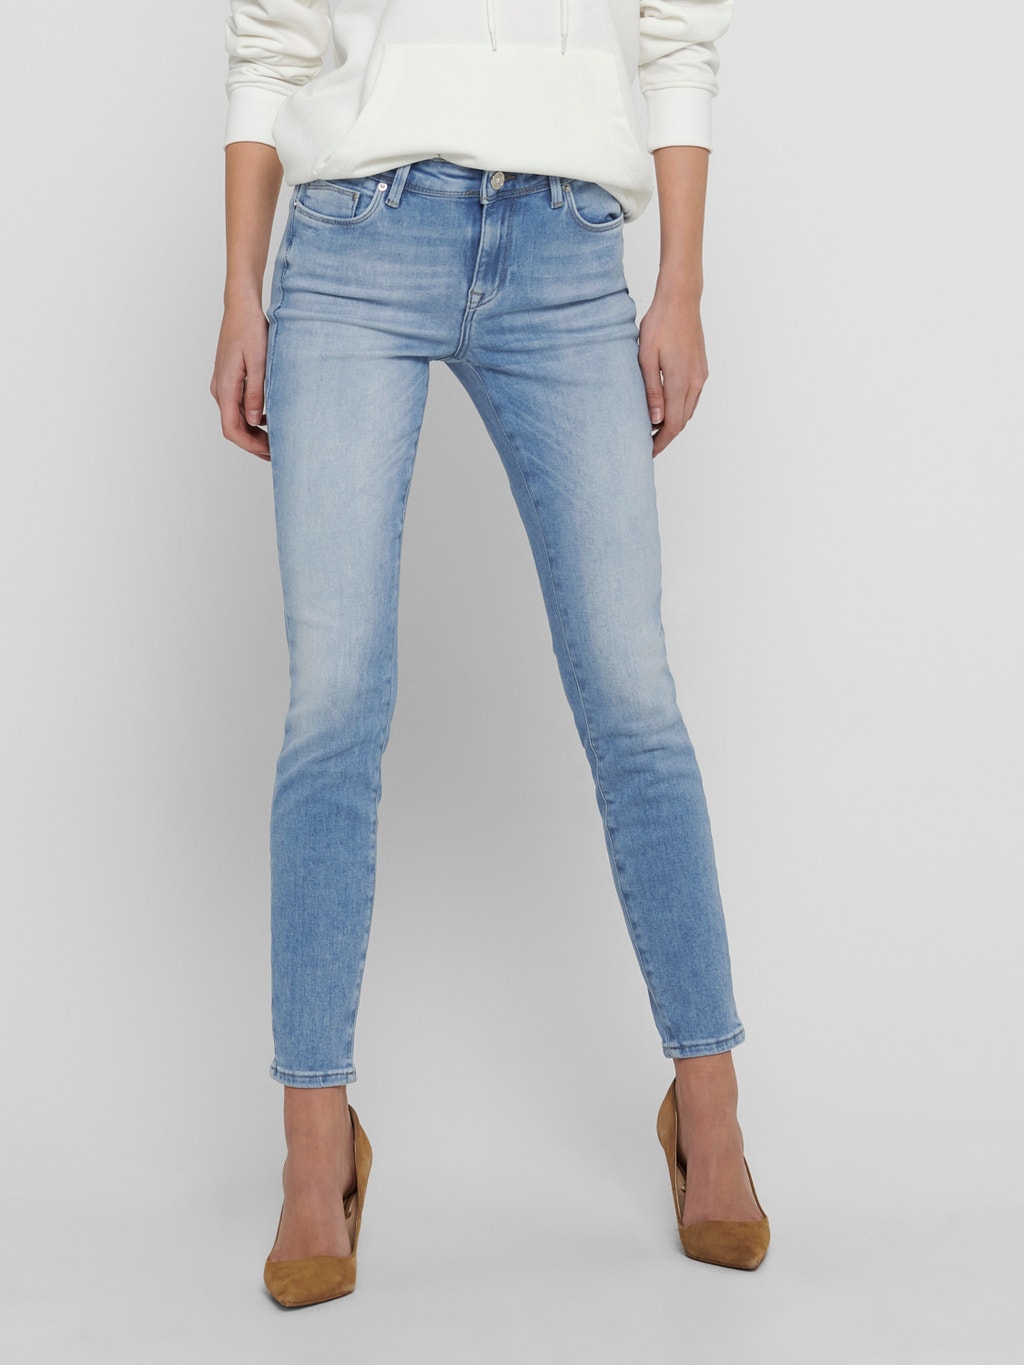 Snikken Landschap Kort geleden ONLShape life reg ankle Skinny fit jeans with 30 discount! | ONLY®